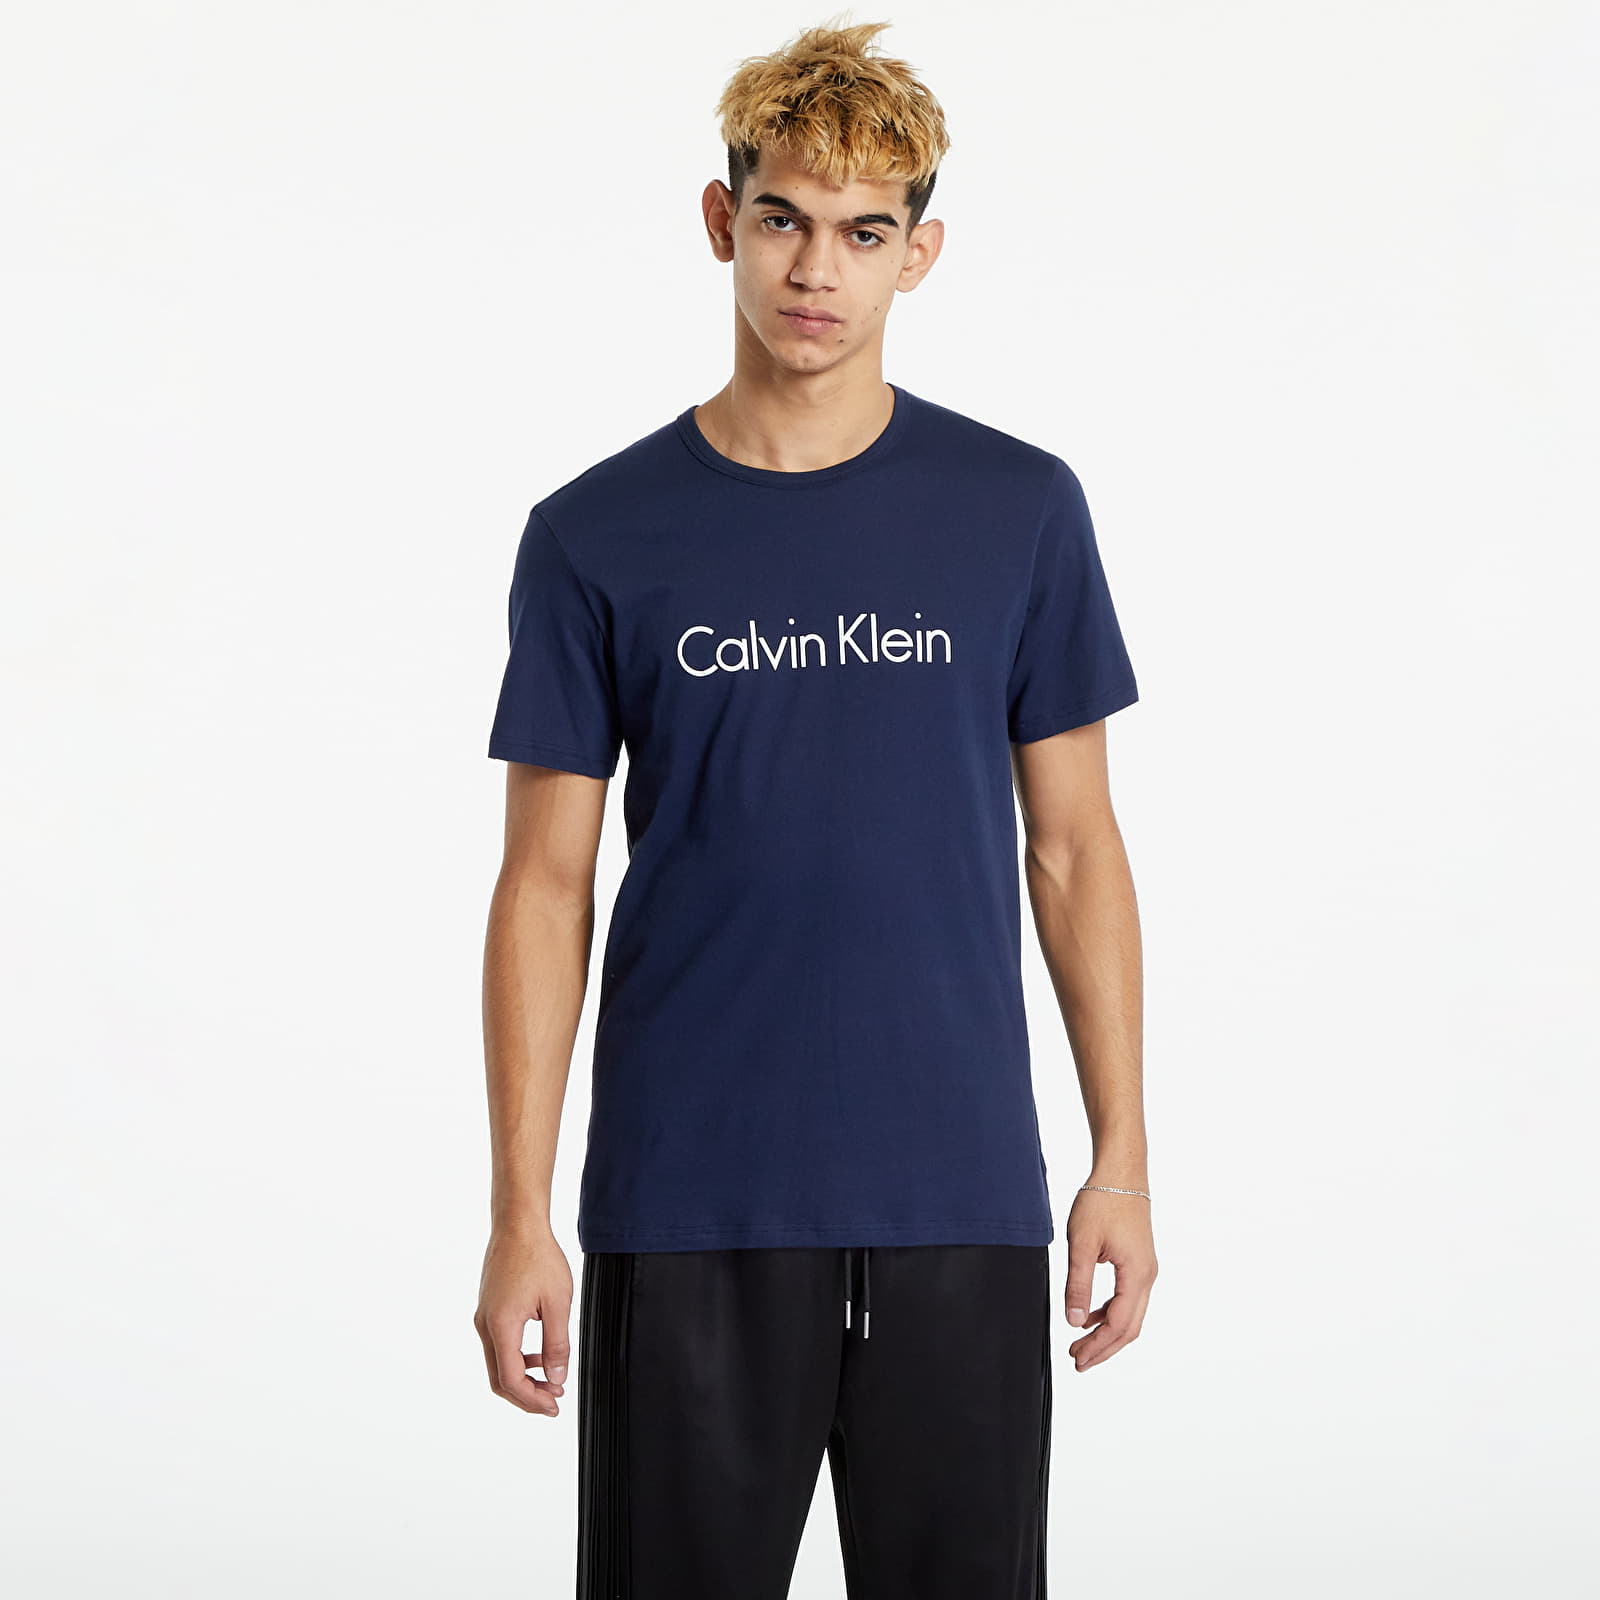 Тениски Calvin Klein Graphic Tee Navy